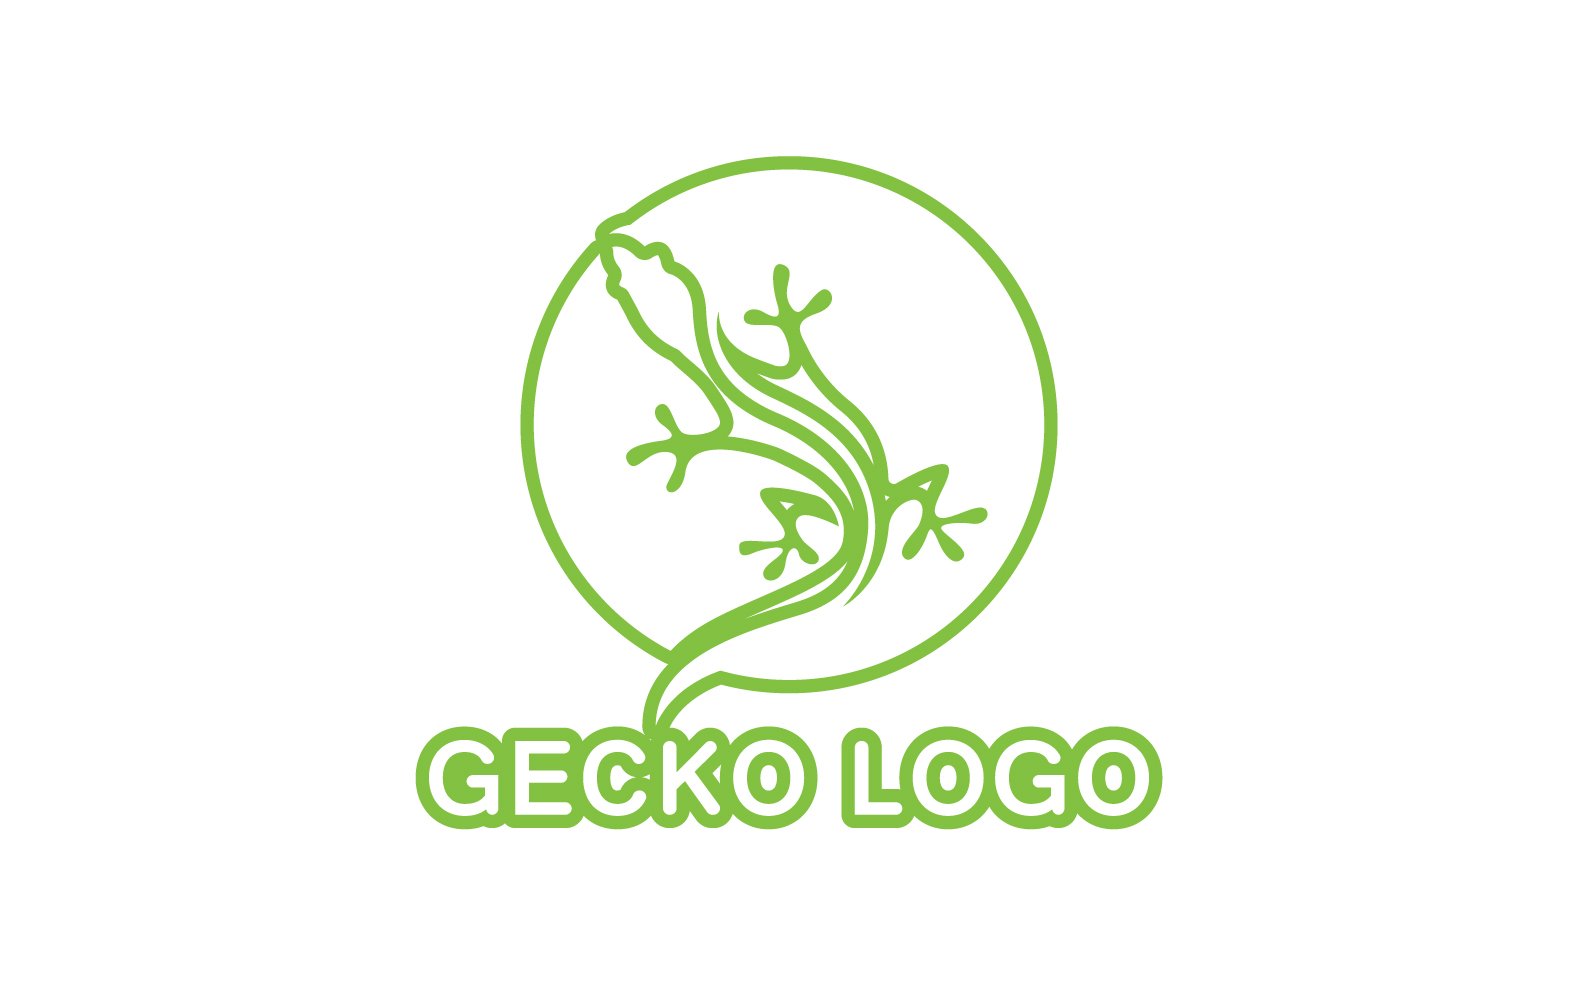 Kit Graphique #324521 Logo Gecko Divers Modles Web - Logo template Preview